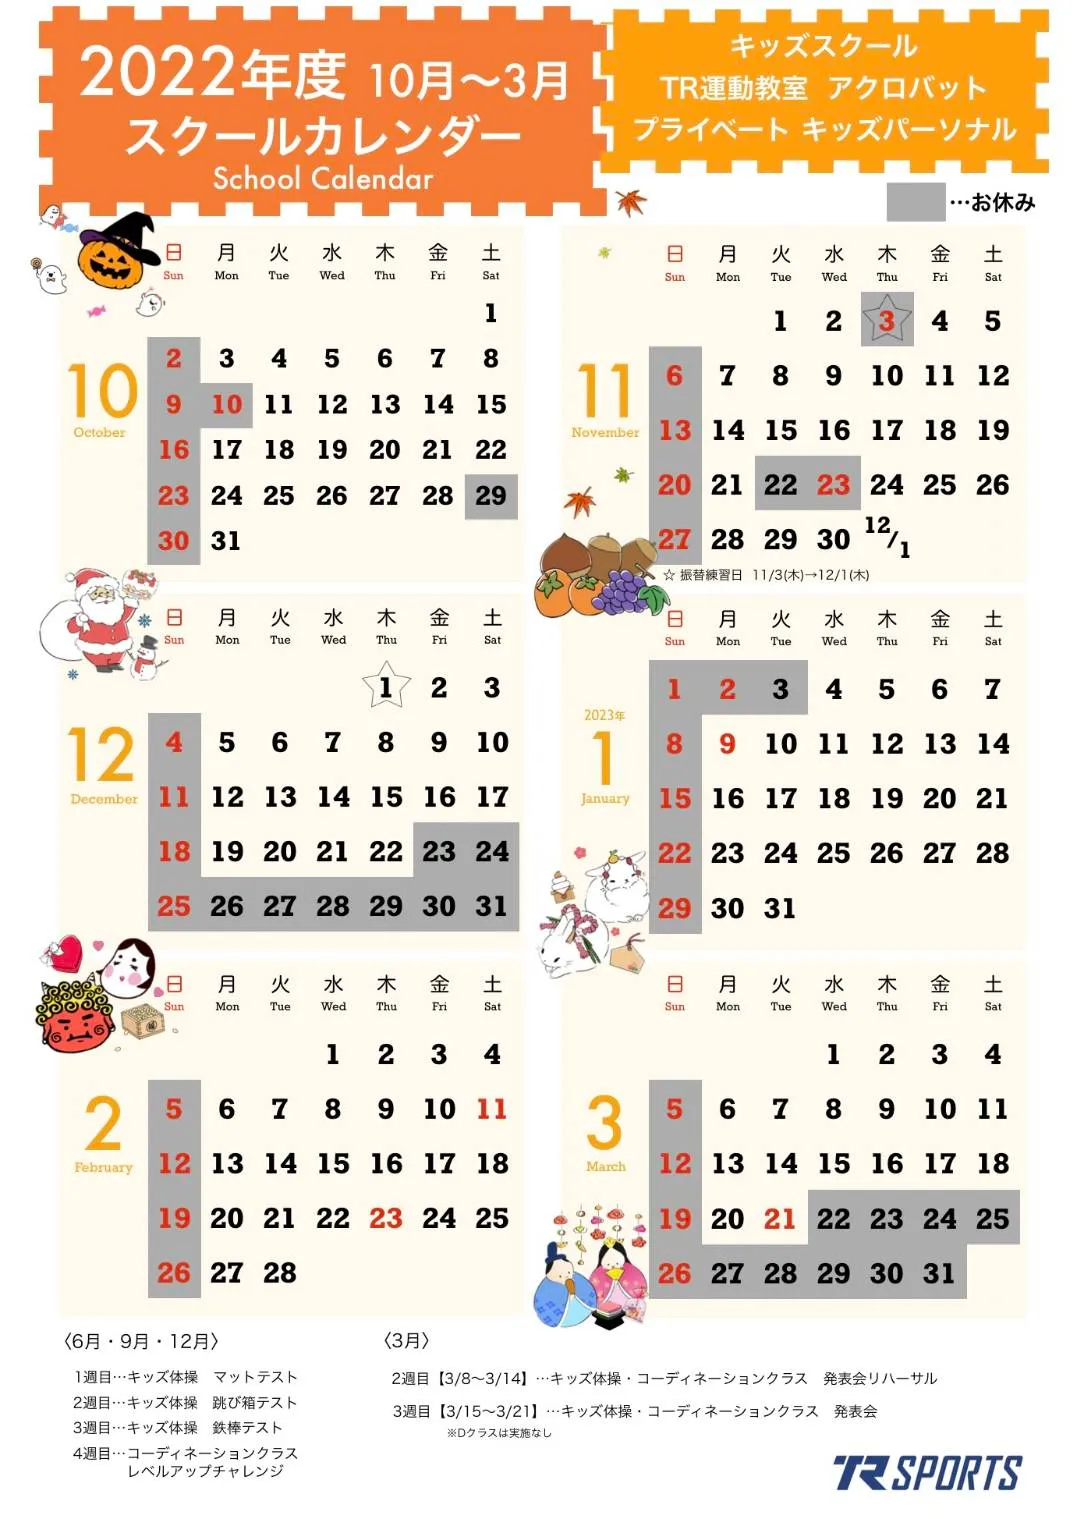 2022年度 10月〜3月 スクールカレンダー